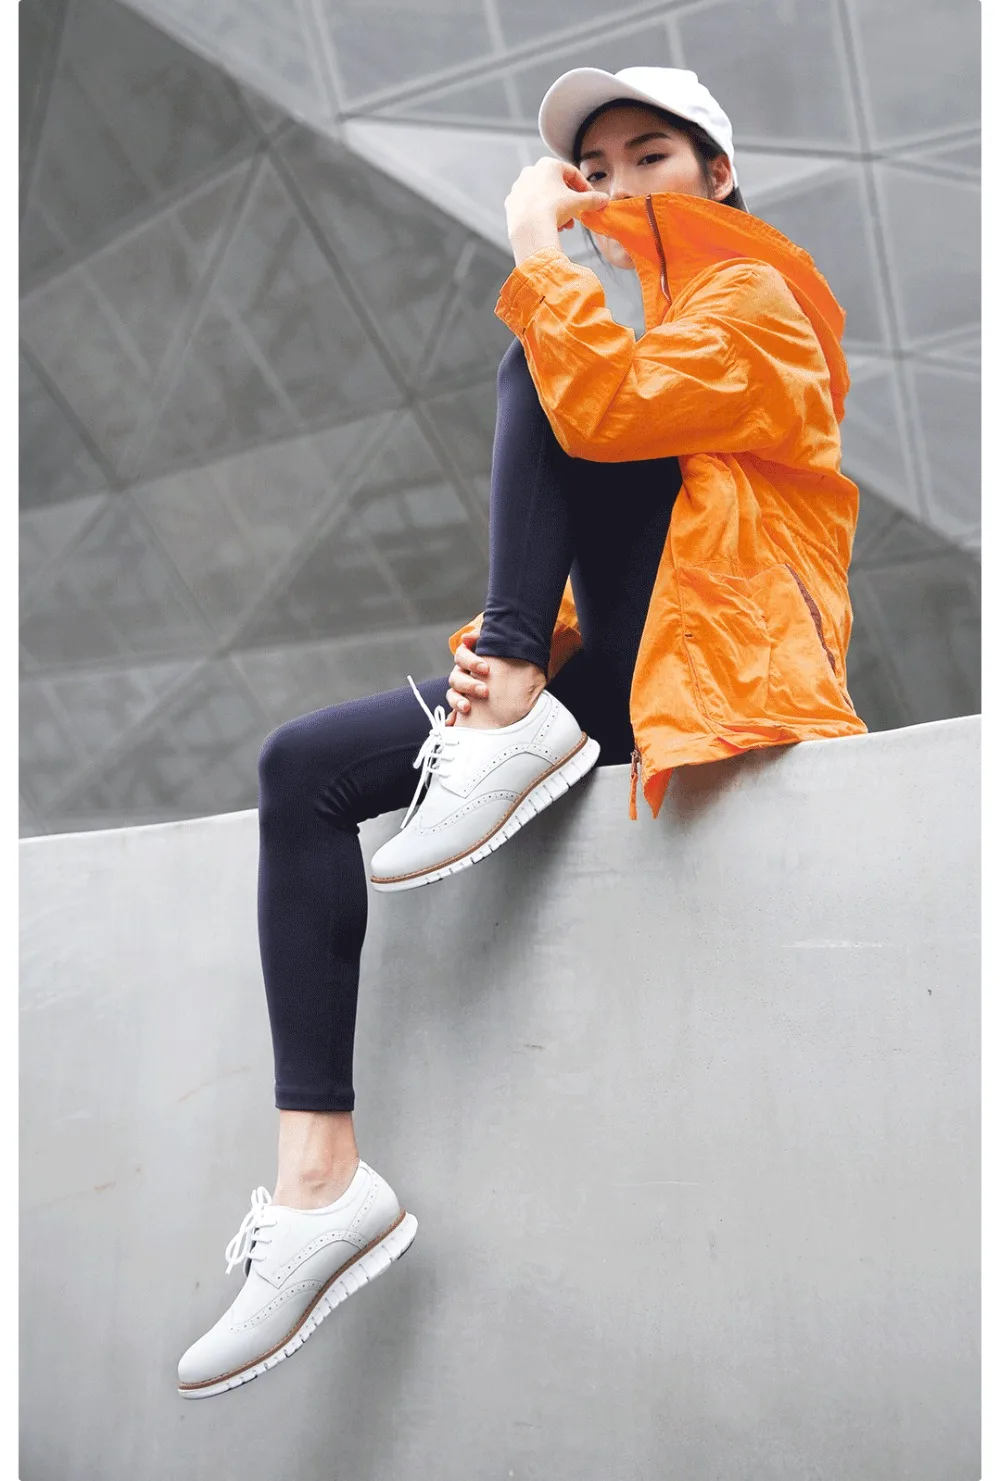 Xiaomi qimian/Женская легкая спортивная обувь в стиле дерби; легкая сверхэластичная резина; кожаная обувь на подошве для мужчин и женщин